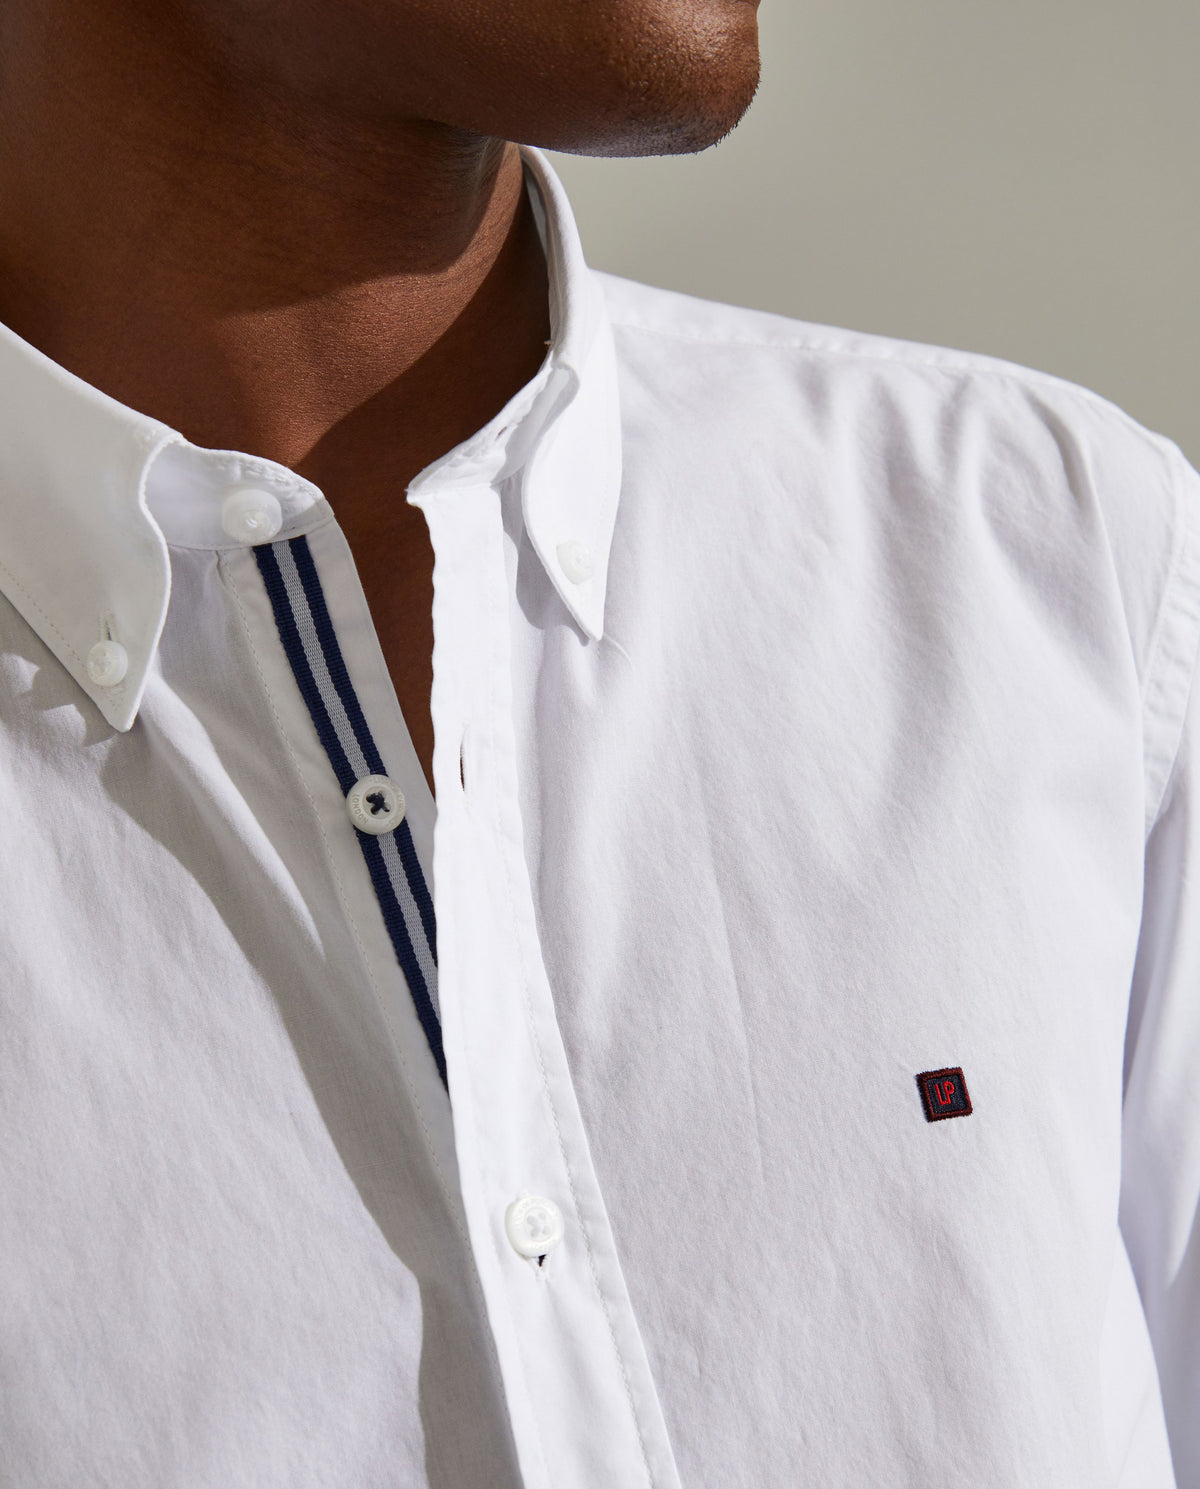 Camisa para homem slim fit de algodão com colarinho de dois botões